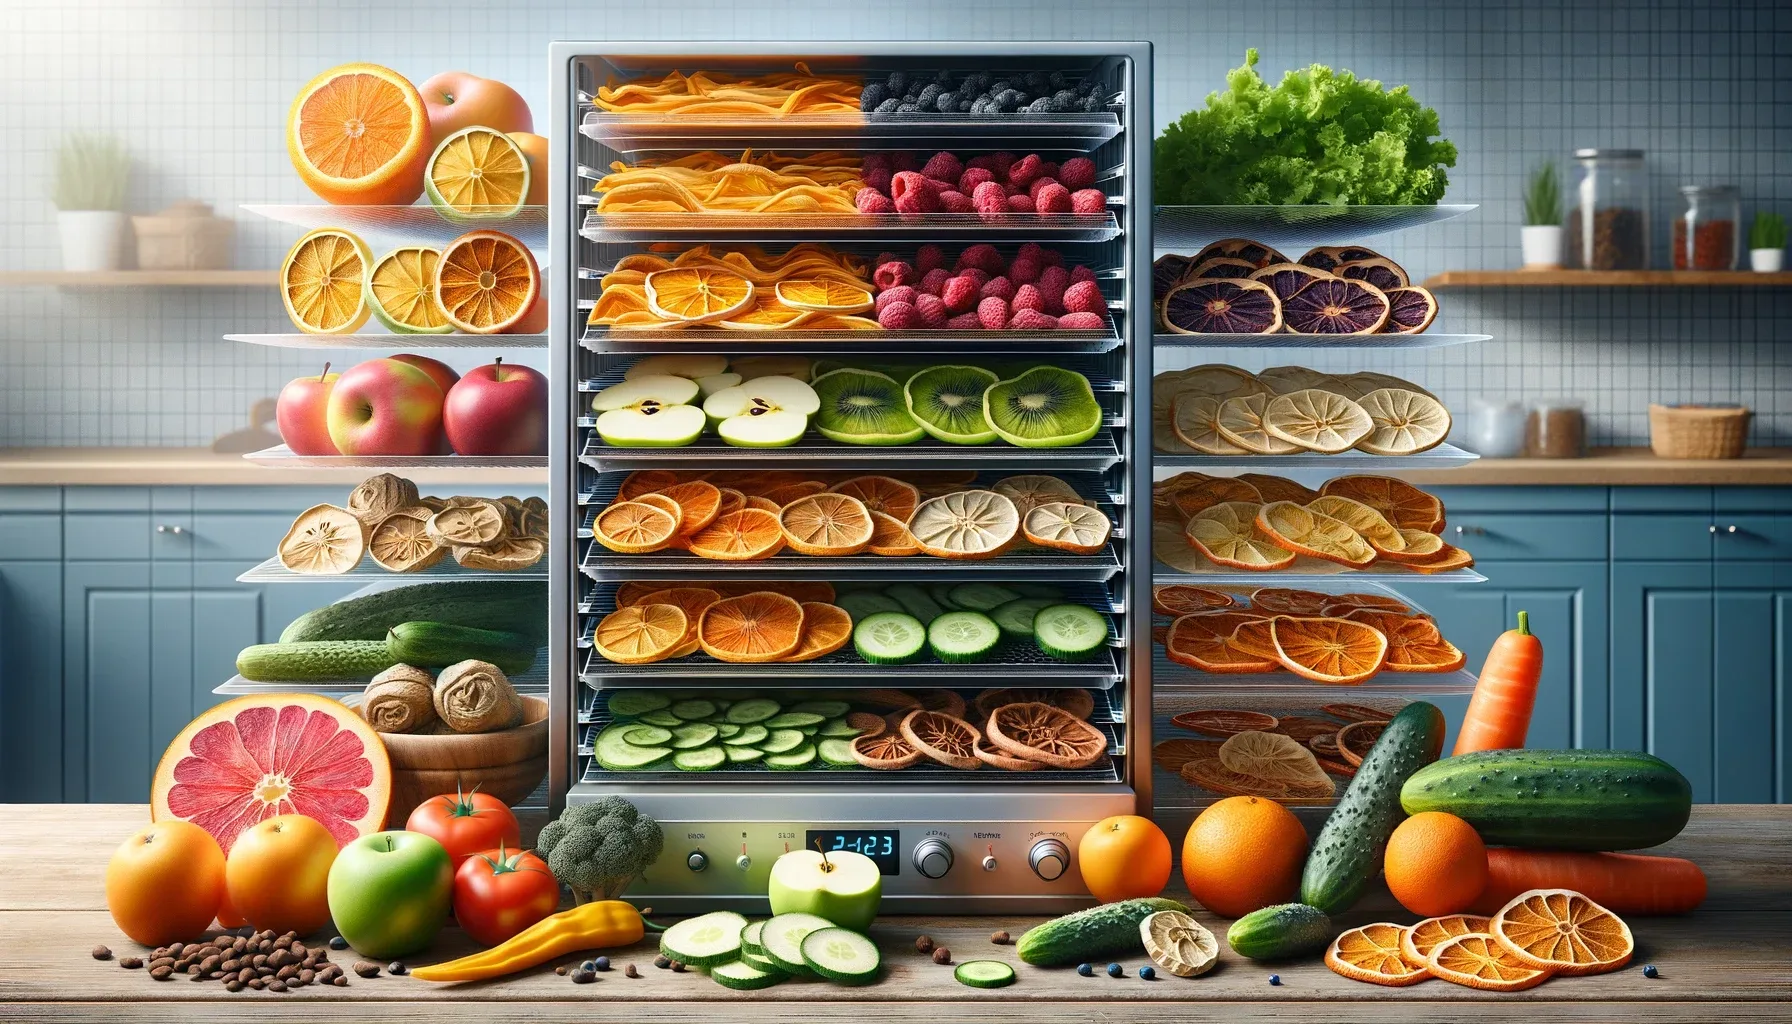 Deshidratar fruta y verdura en casa con un deshidratador de alimentos:  consejos para conservar comida todo el año